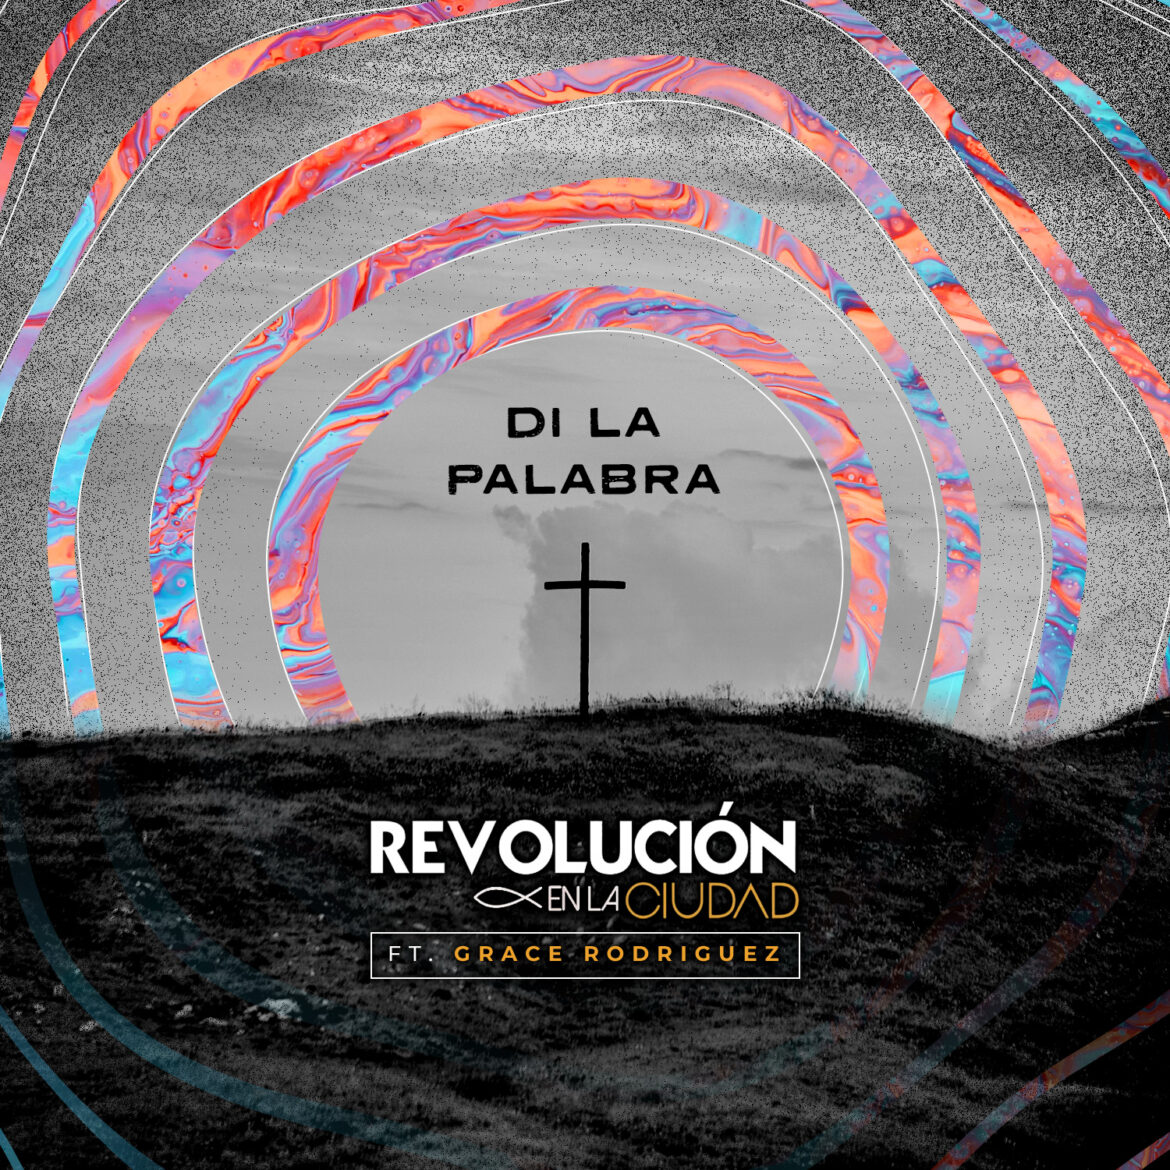 Revolución en la Ciudad presenta el sencillo “Di la palabra” junto a Grace Rodríguez